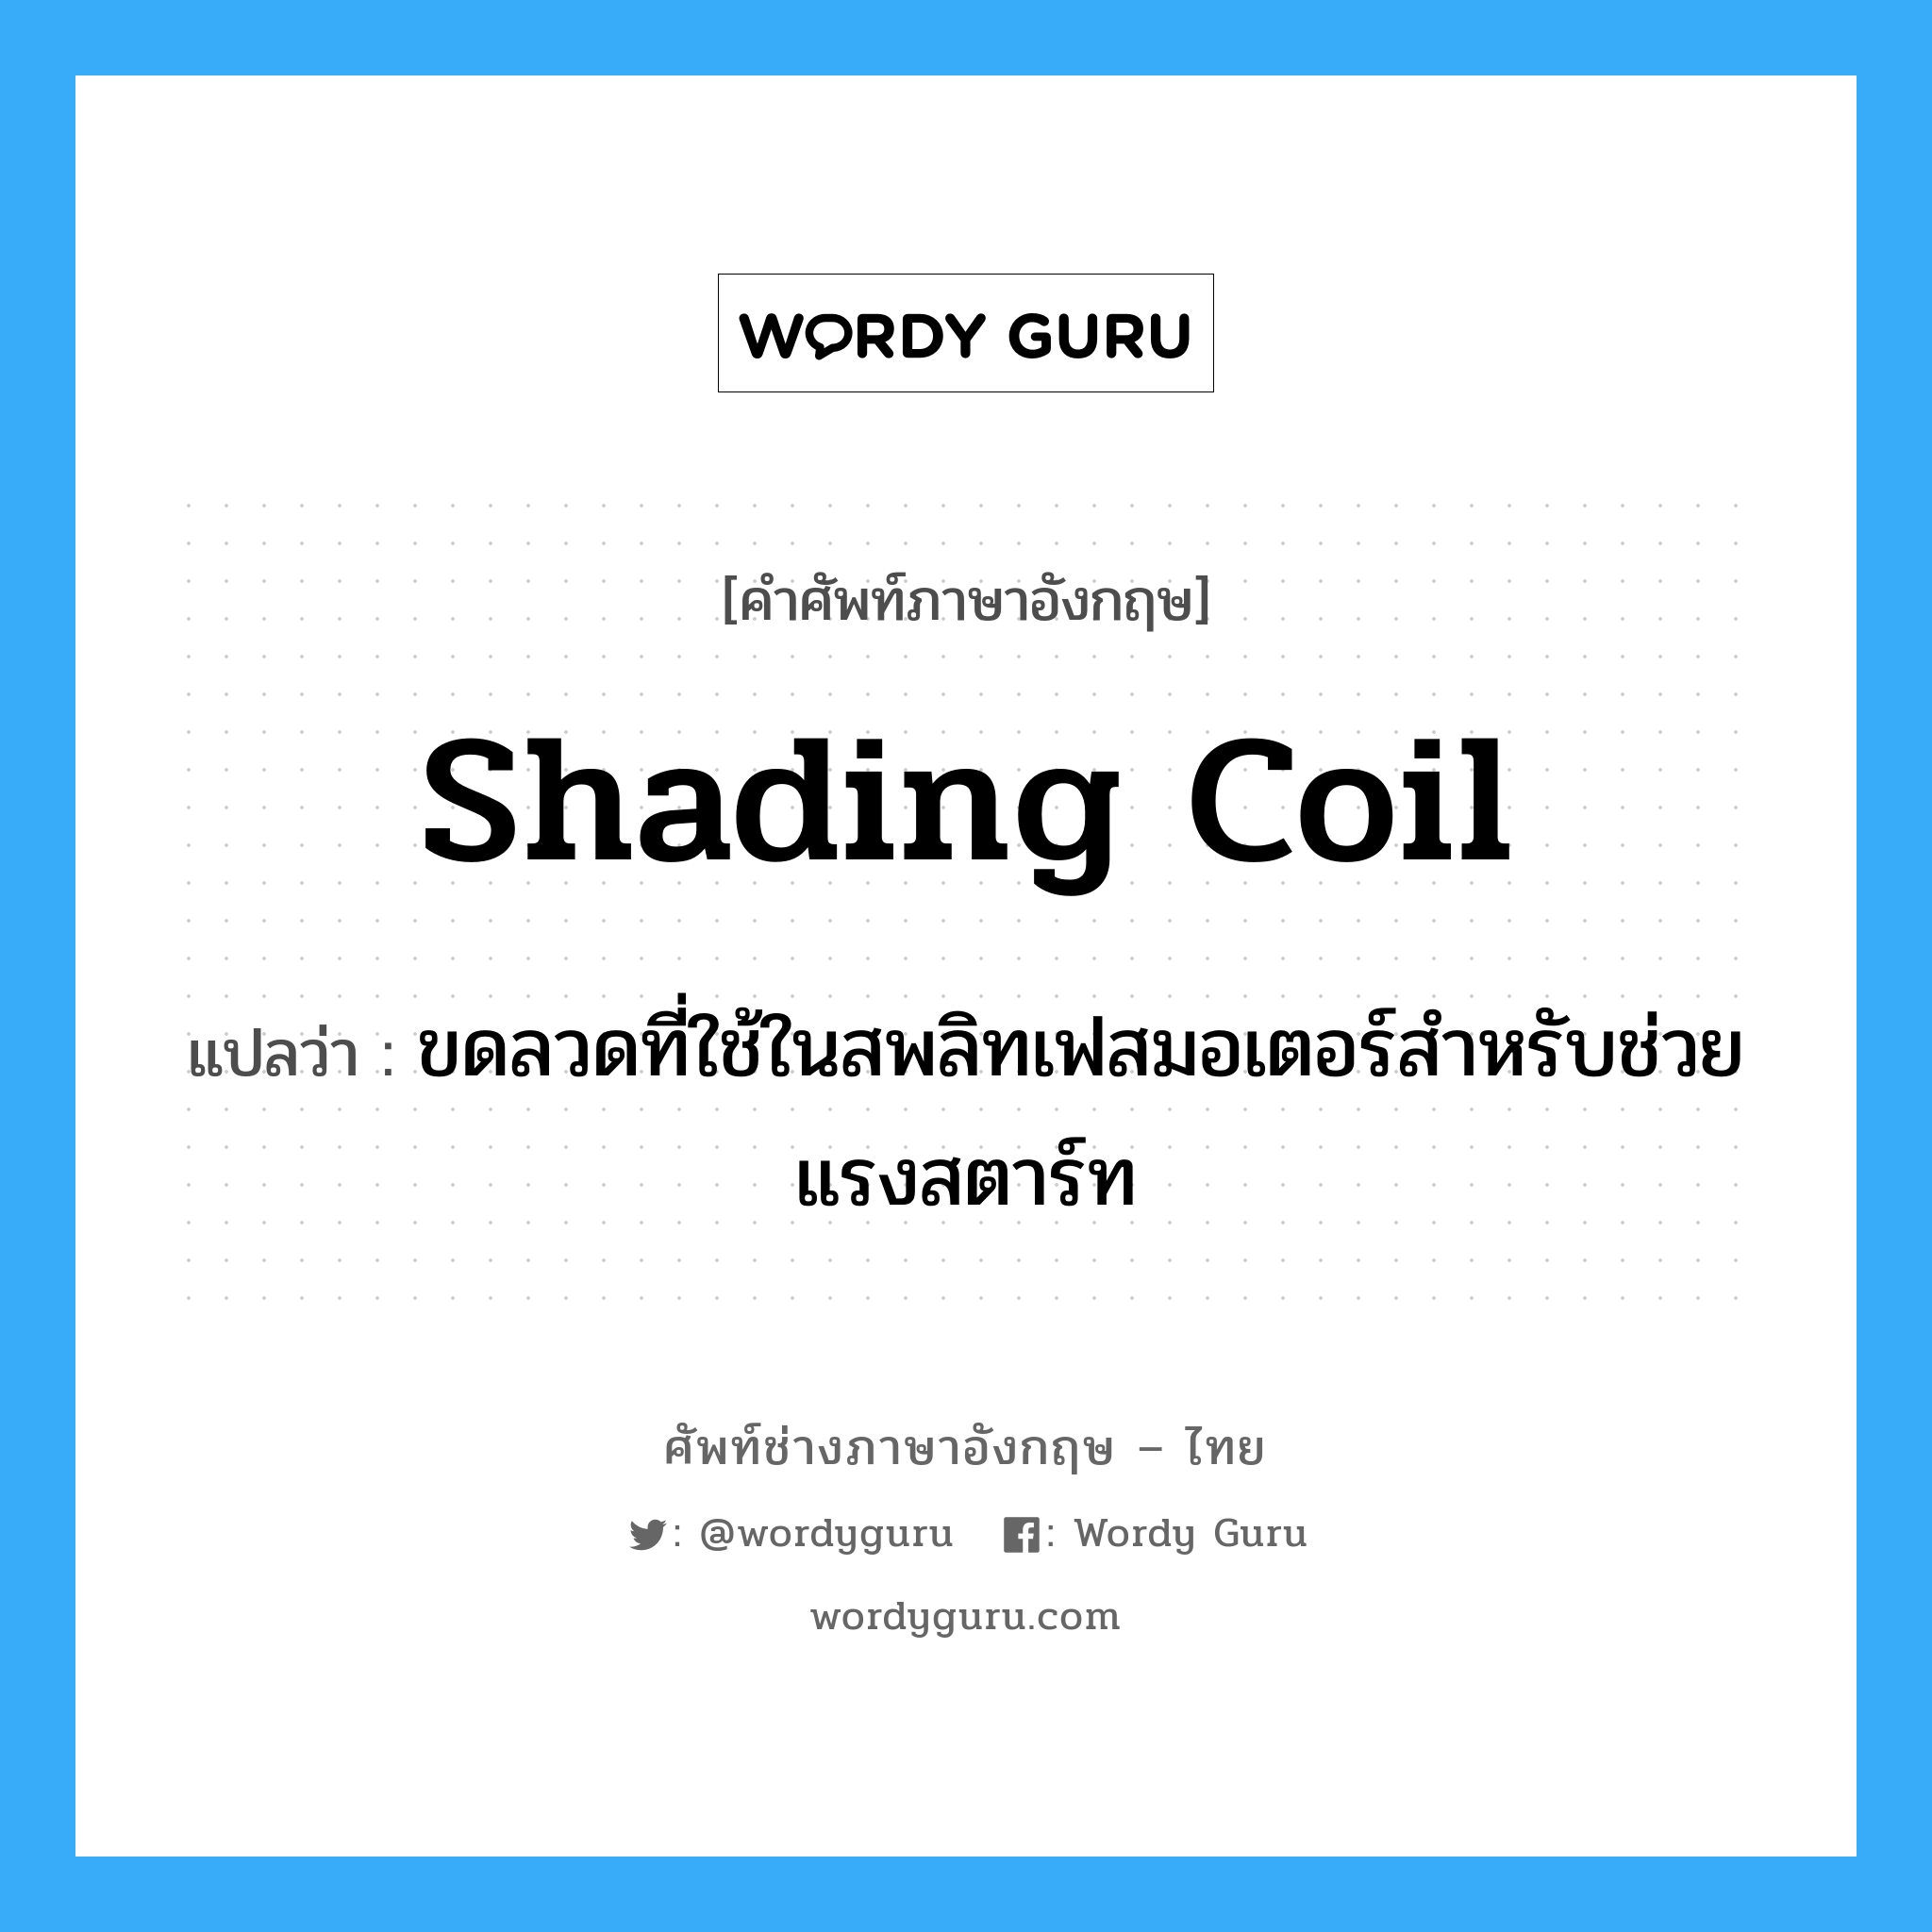 shading coil แปลว่า?, คำศัพท์ช่างภาษาอังกฤษ - ไทย shading coil คำศัพท์ภาษาอังกฤษ shading coil แปลว่า ขดลวดที่ใช้ในสพลิทเฟสมอเตอร์สำหรับช่วยแรงสตาร์ท